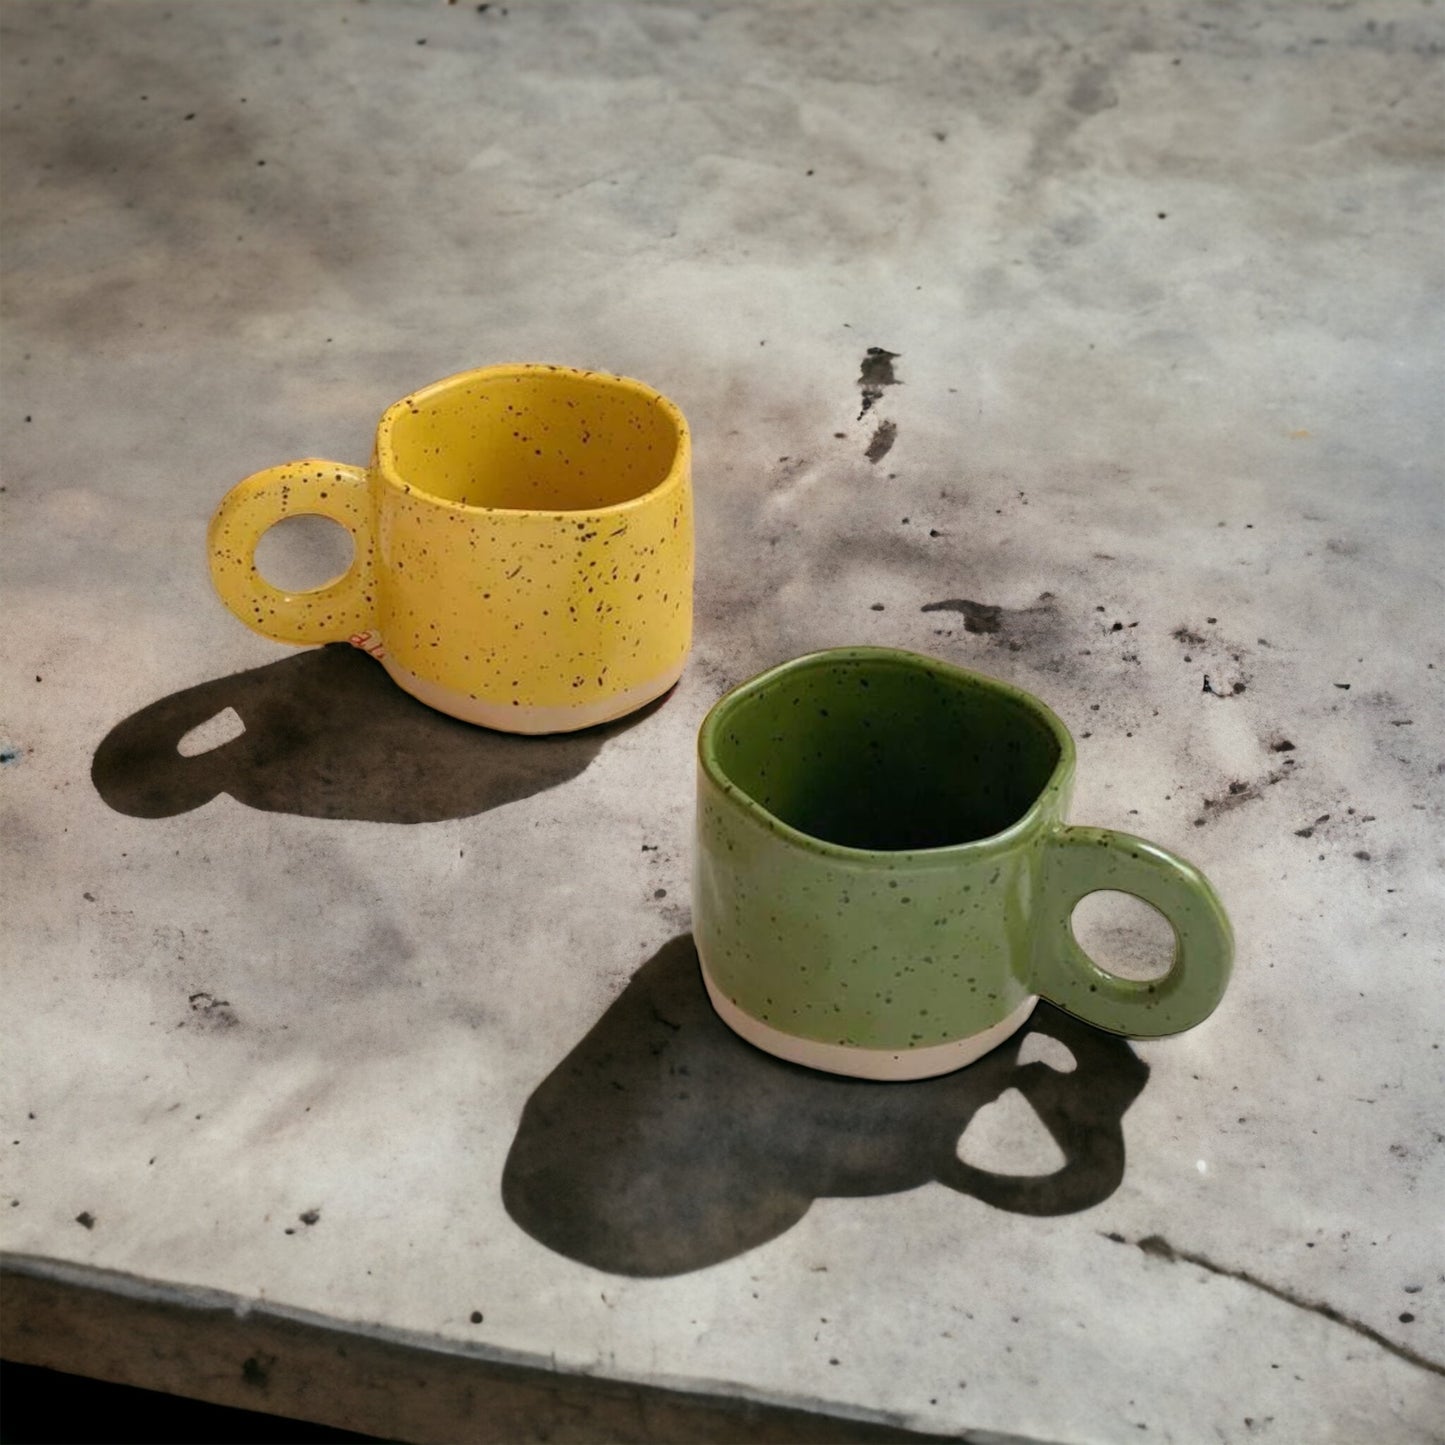 Irregular Ceramic Cup